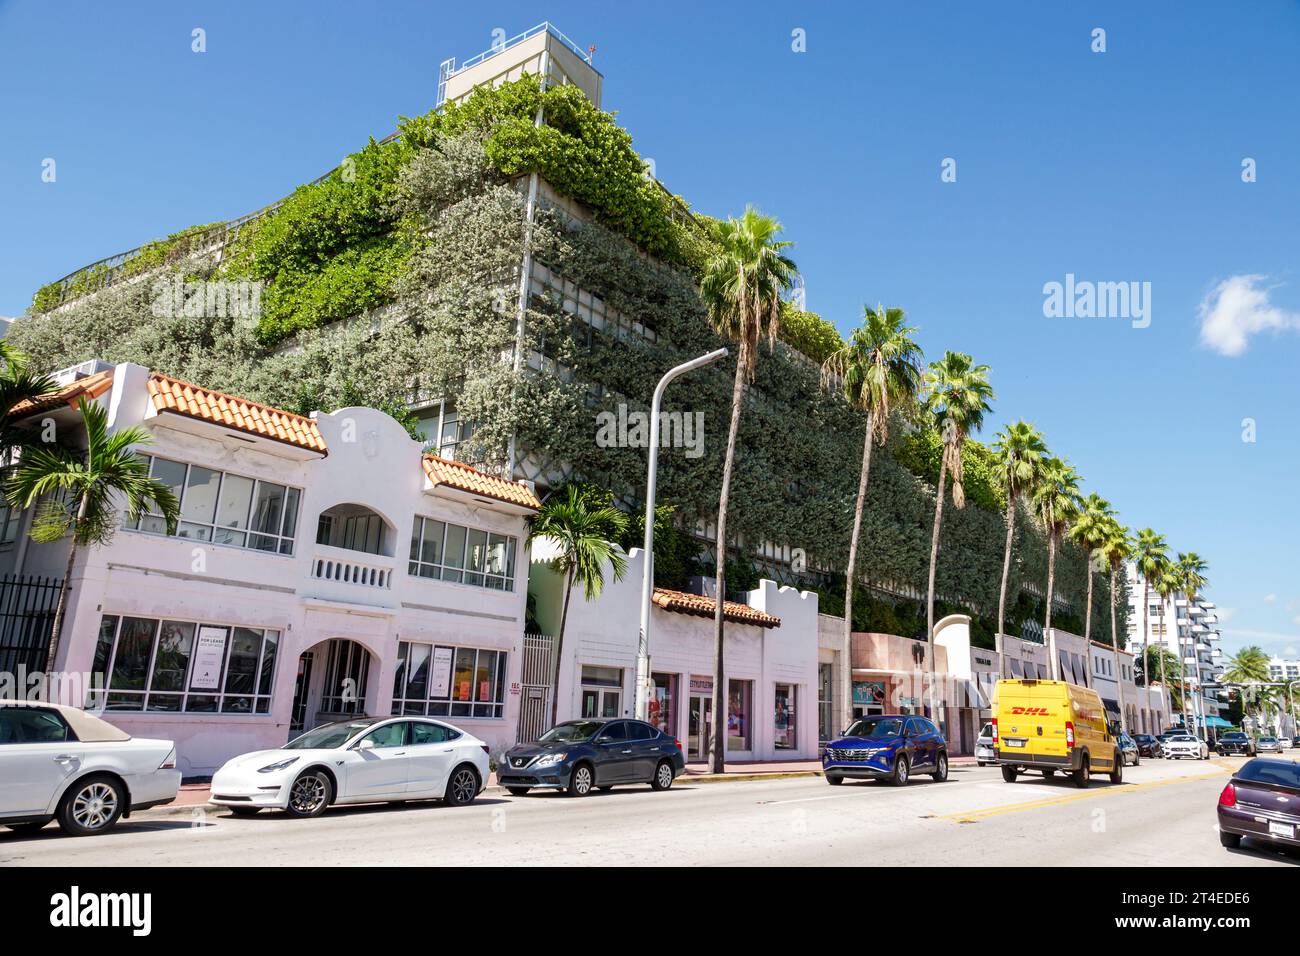 Miami Beach Floride, extérieur extérieur, bâtiment, parking 7th Seventh et Collins Avenue parking garage, jardinières couvertes de feuillage indigène, sustainabili Banque D'Images